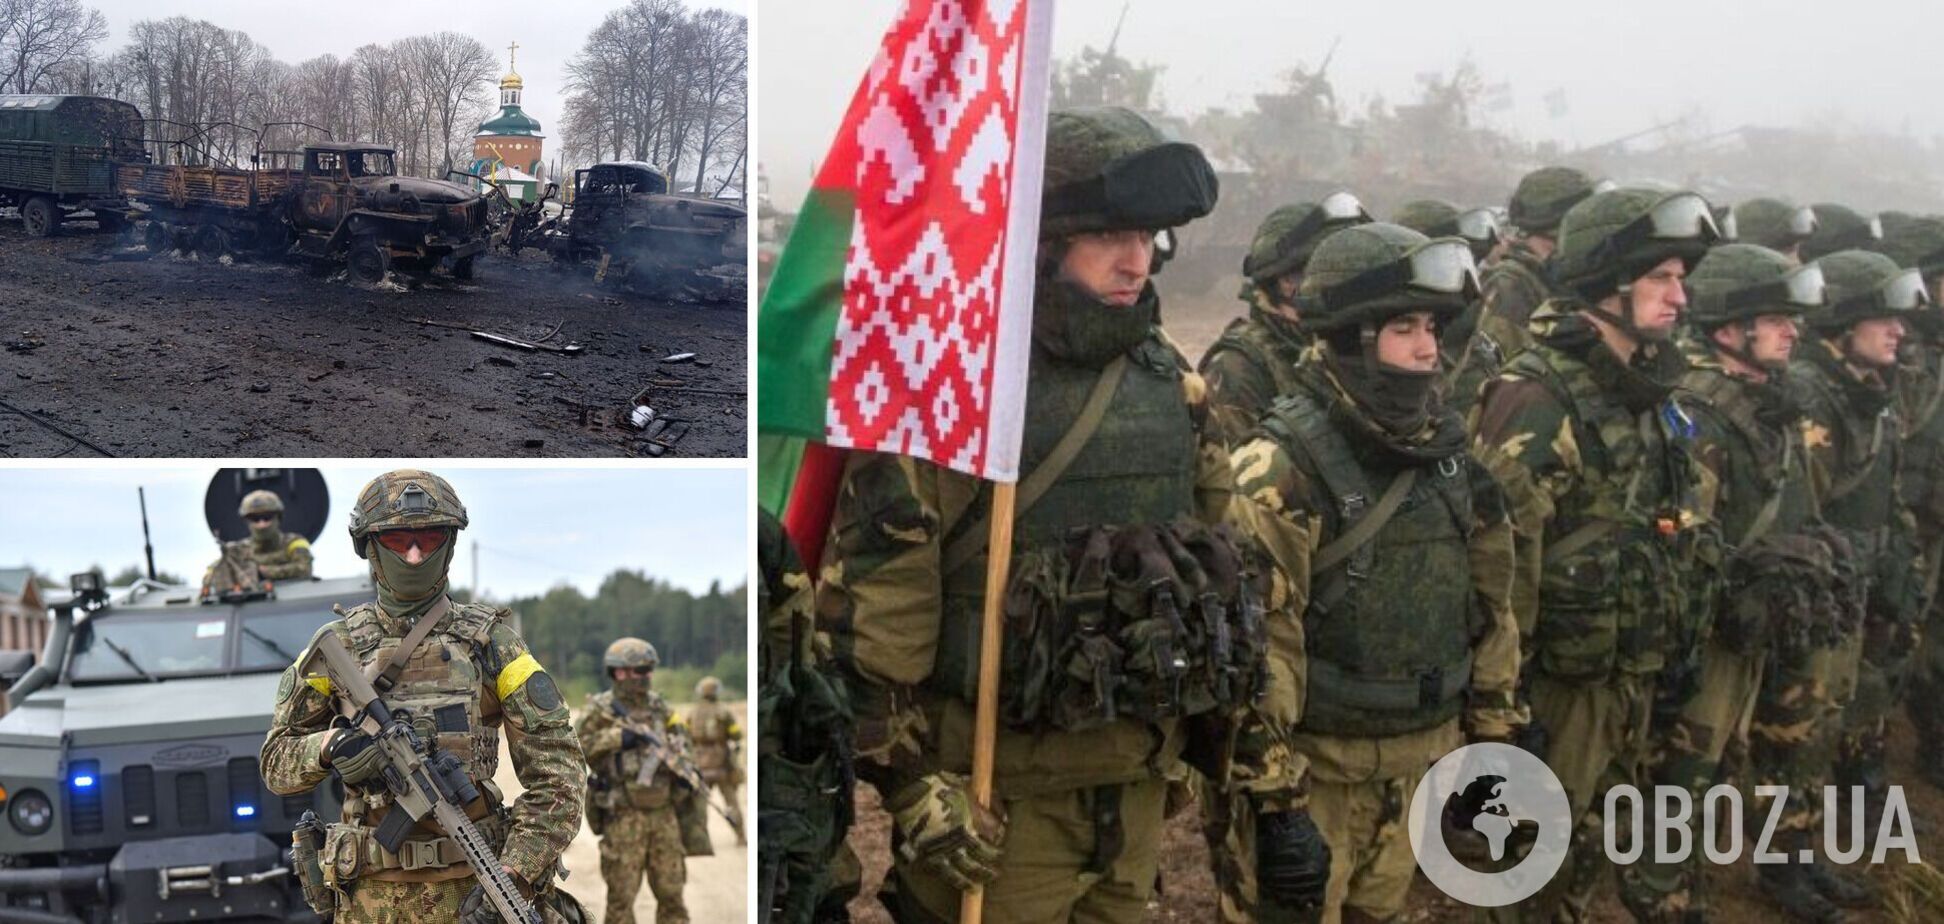 Беларусь привела войска в боеготовность, а РФ готовит информационную спецоперацию – Минобороны Украины